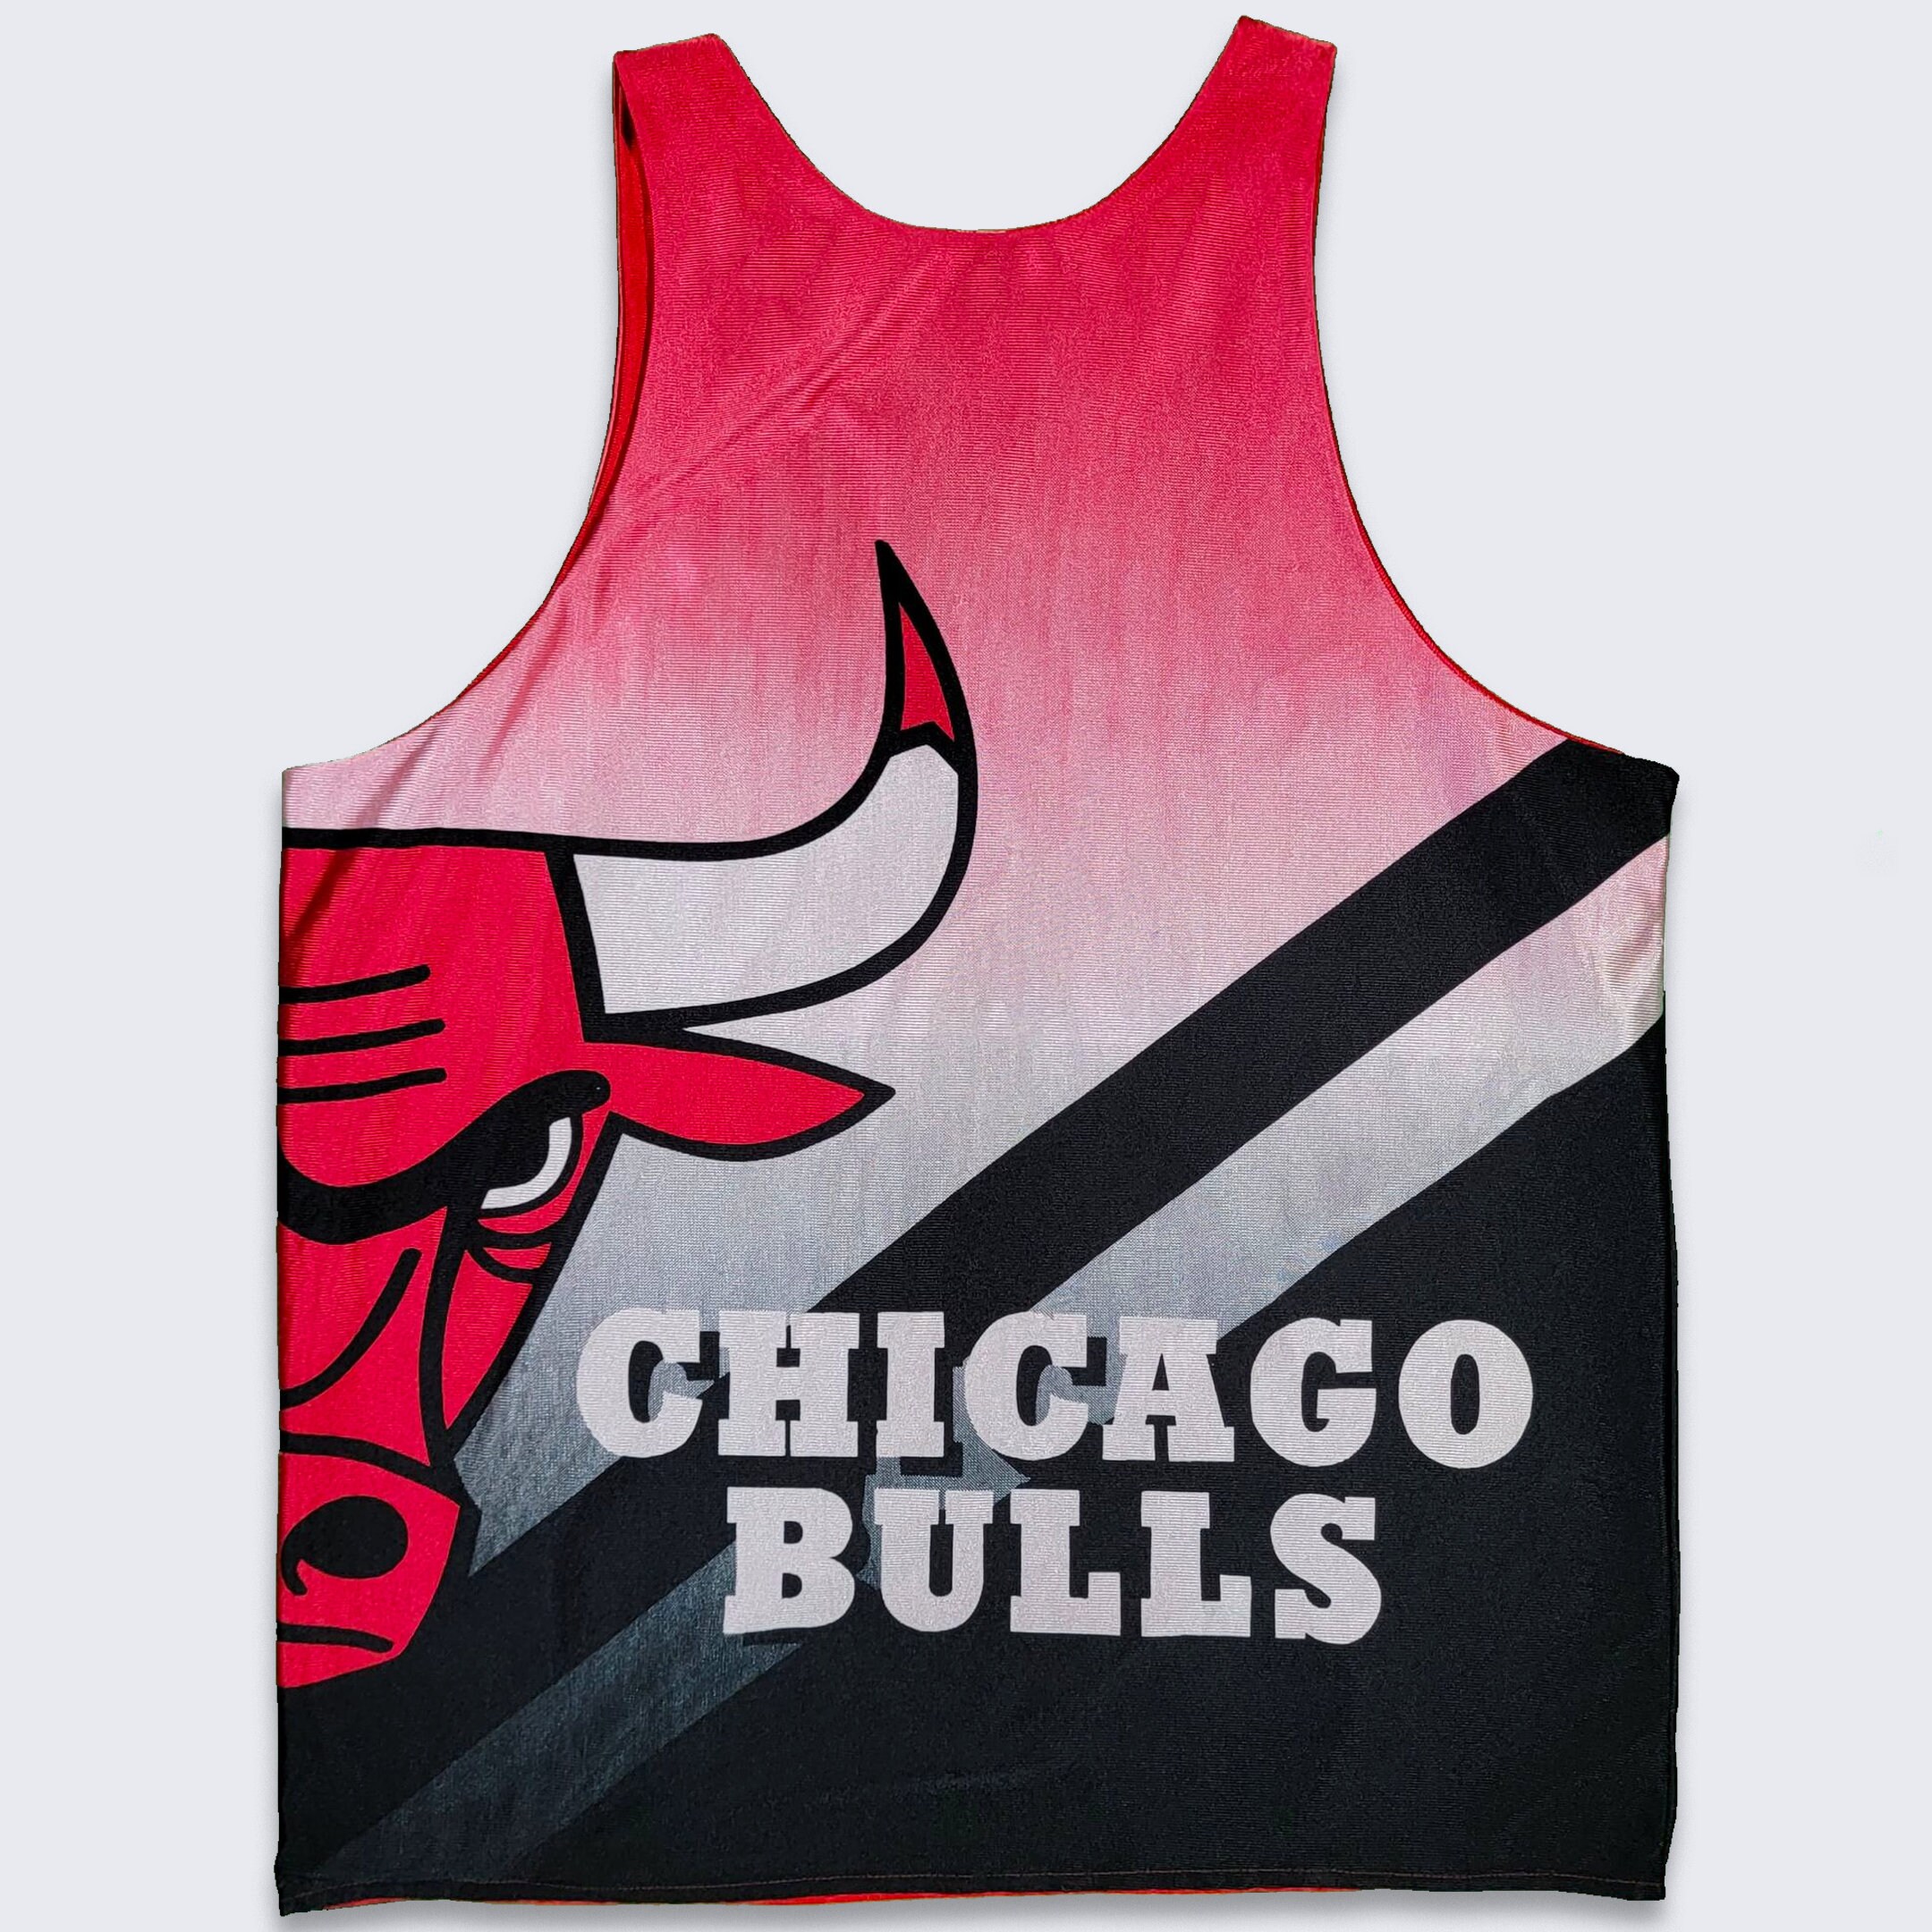 Pets First Co. NBA Chicago Bulls Mesh Basketball Jersey XL